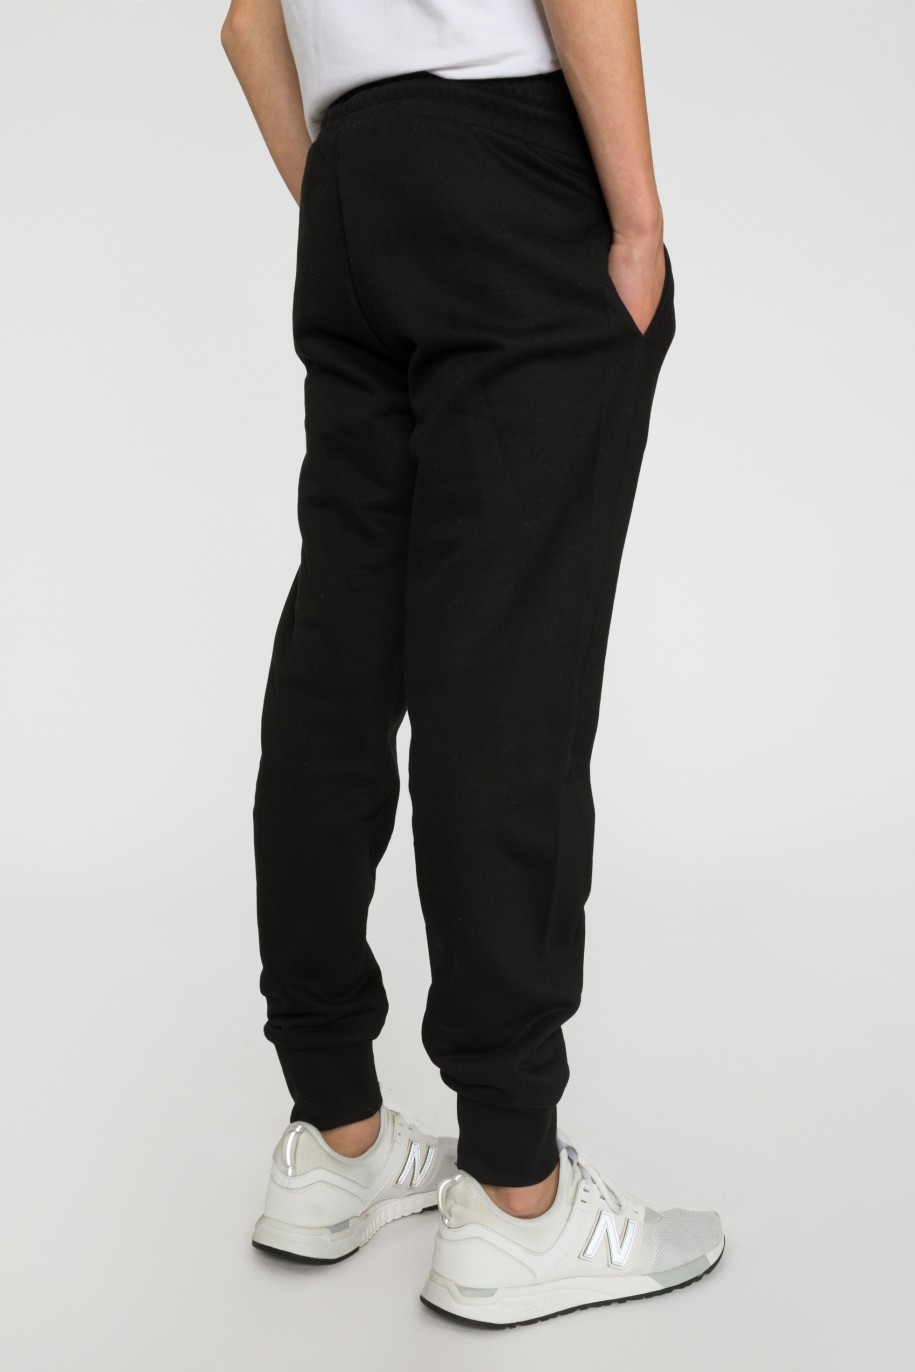 Czarne spodnie dresowe dla chłopaka z gumowymi nadrukami - 33473